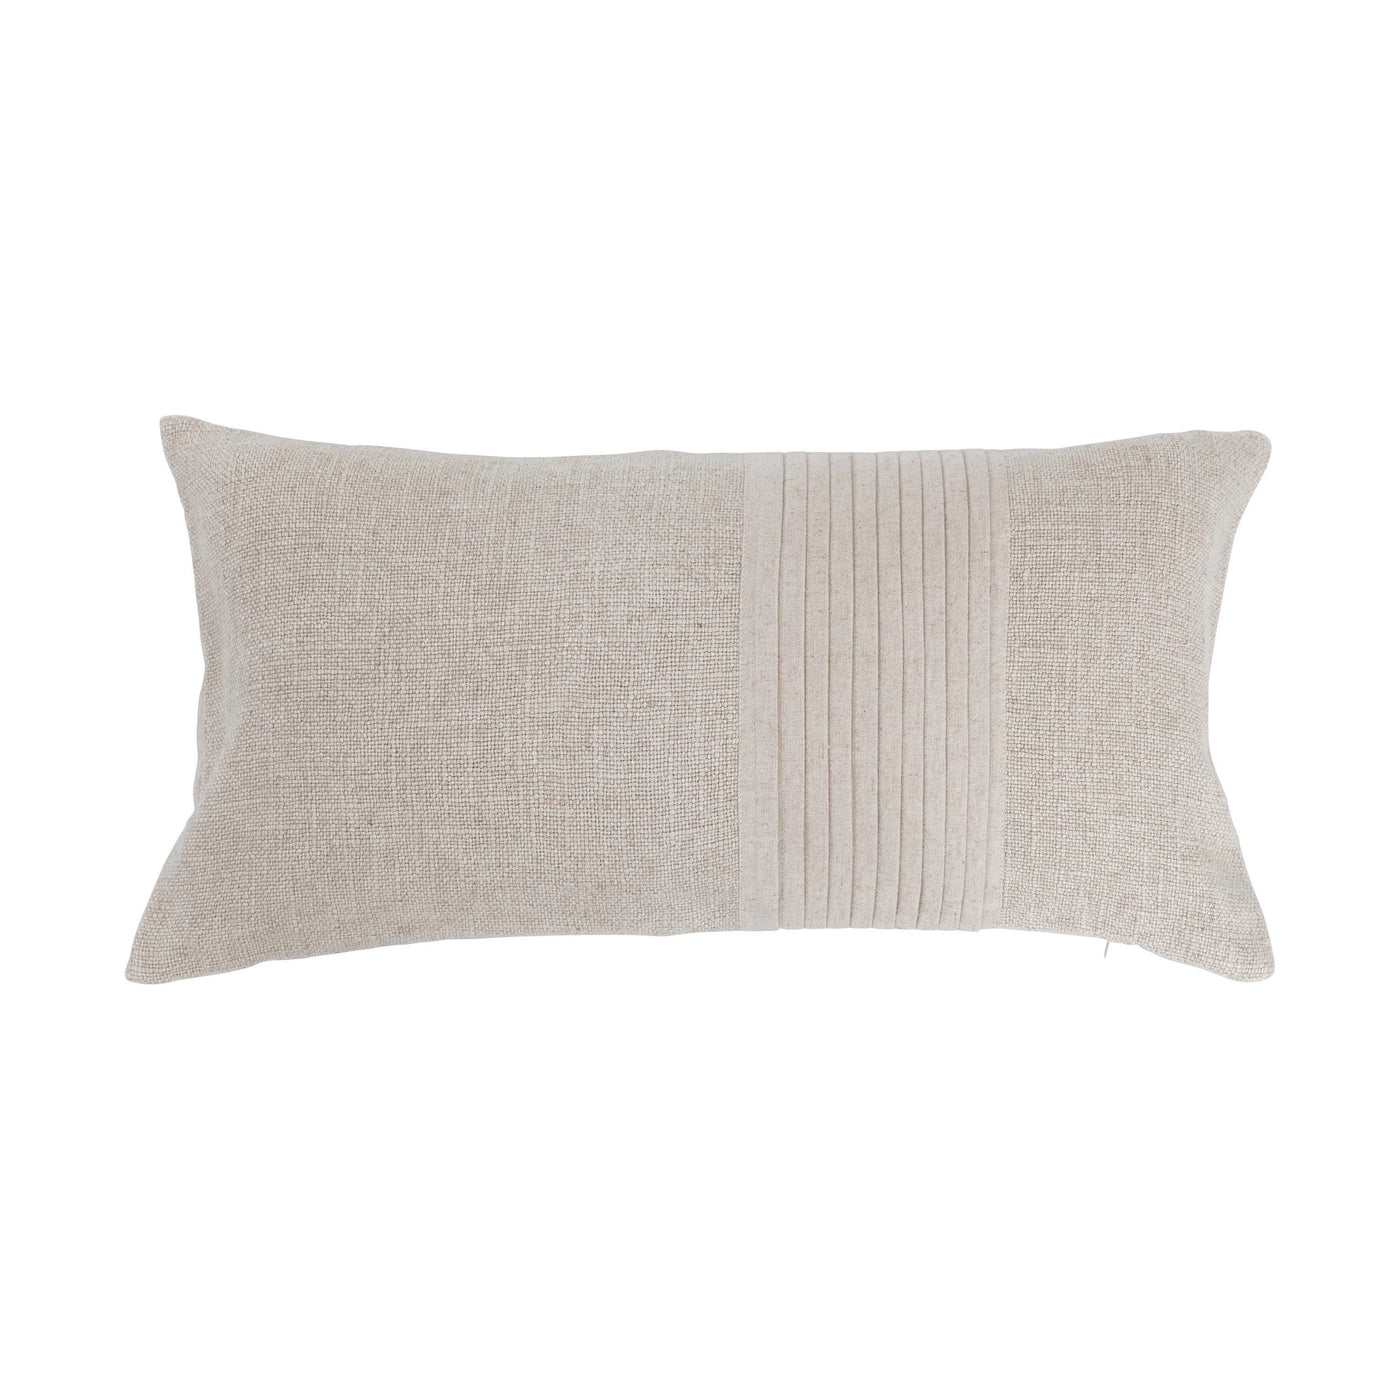 Linen Pleated Lumbar Pillow